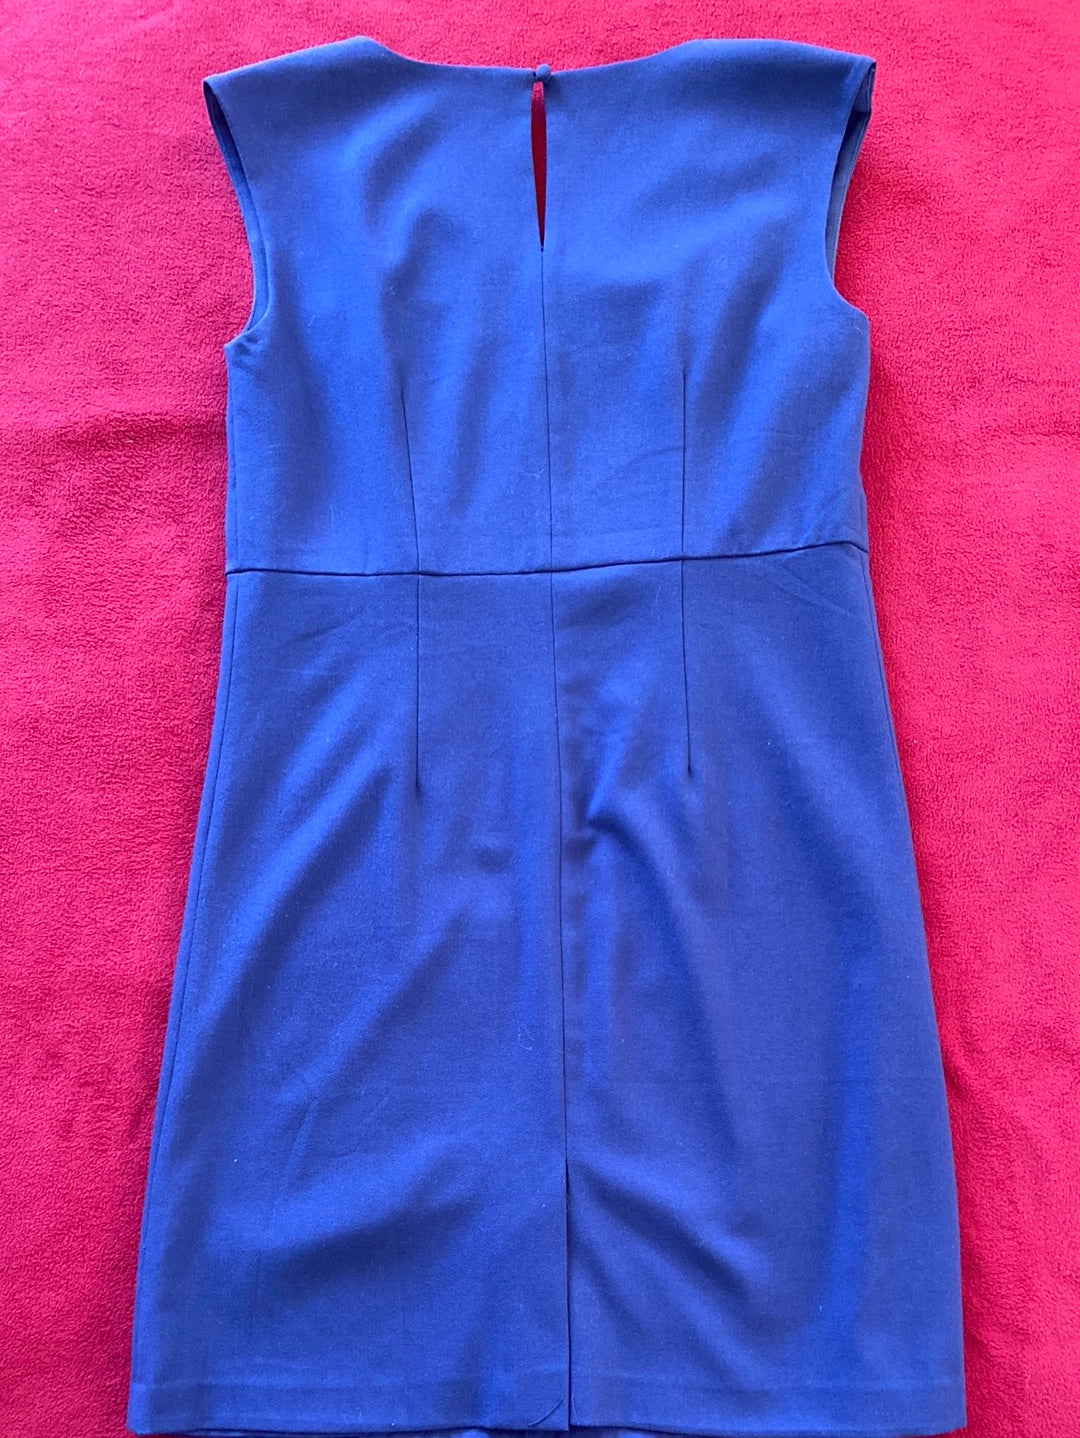 NAVY SHIFT Garnet Hill Dress Size 4